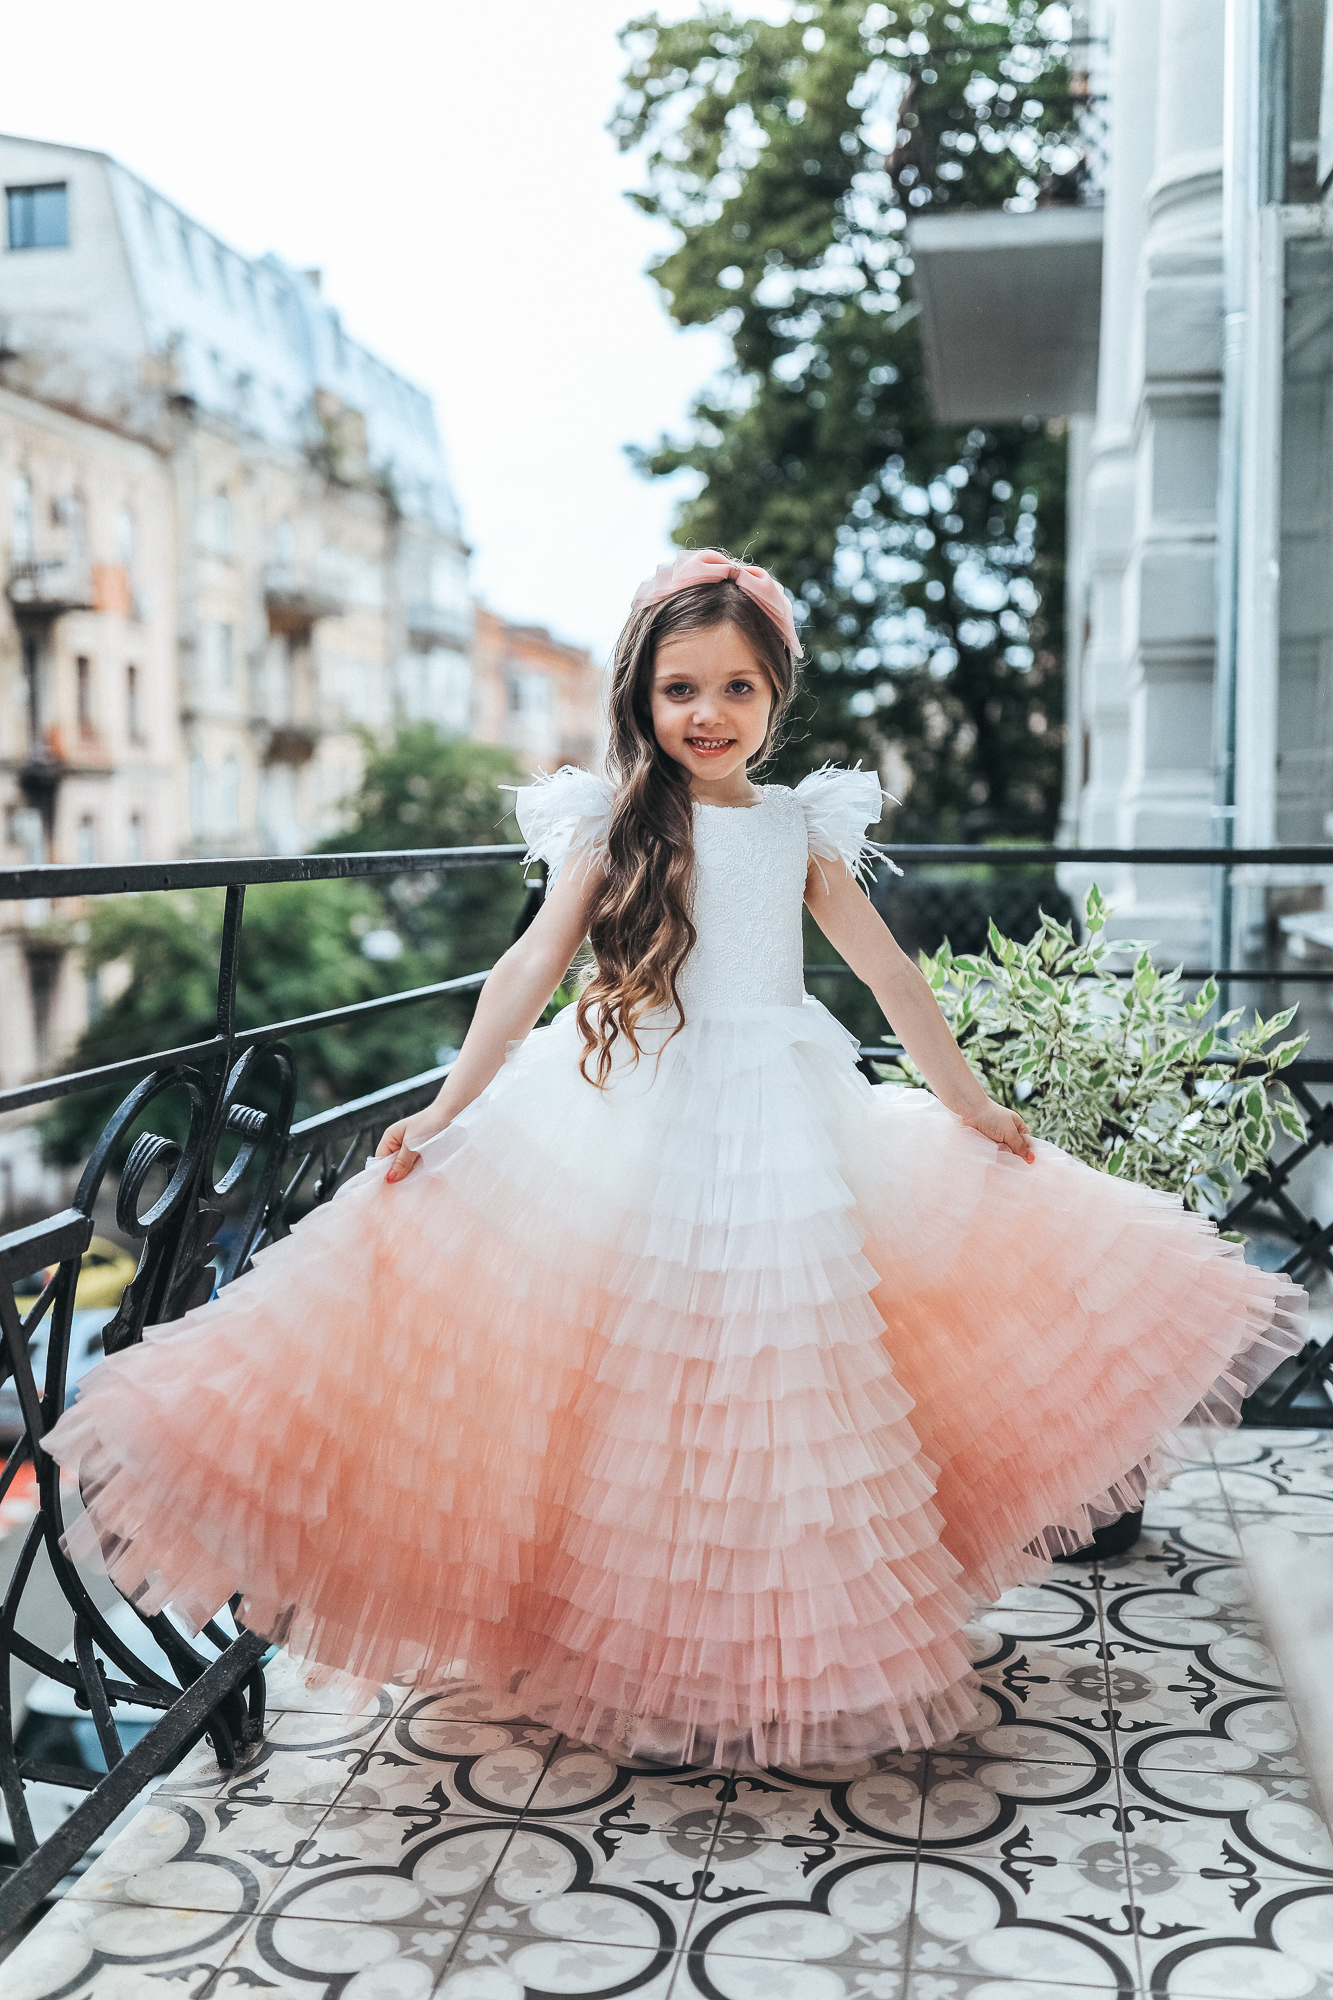 Купить платья для девочек в интернет магазине garant-artem.ru